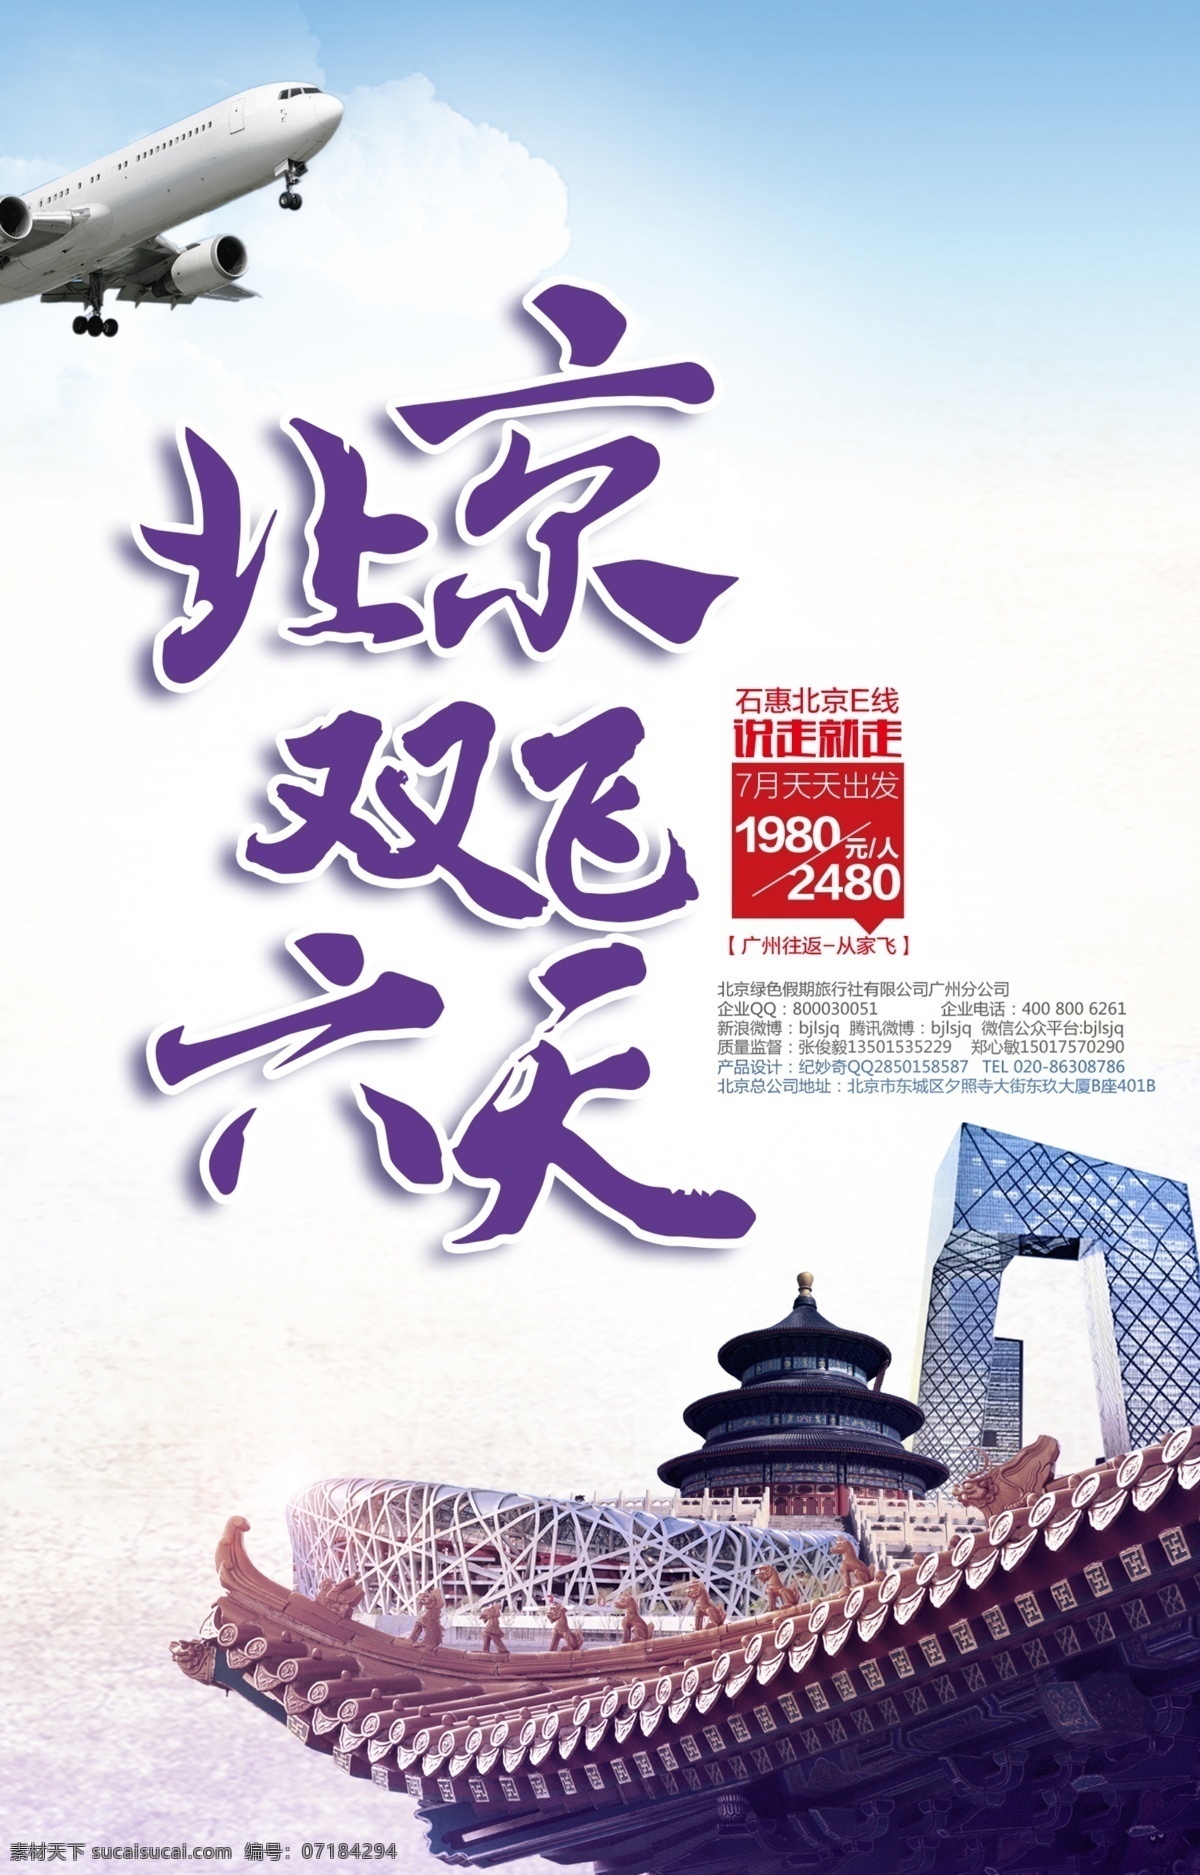 北京 双飞 六日 游 旅游 宣传海报 宣传单 旅游海报 宣传海报设计 旅游宣传单 旅游宣传 旅游宣传语